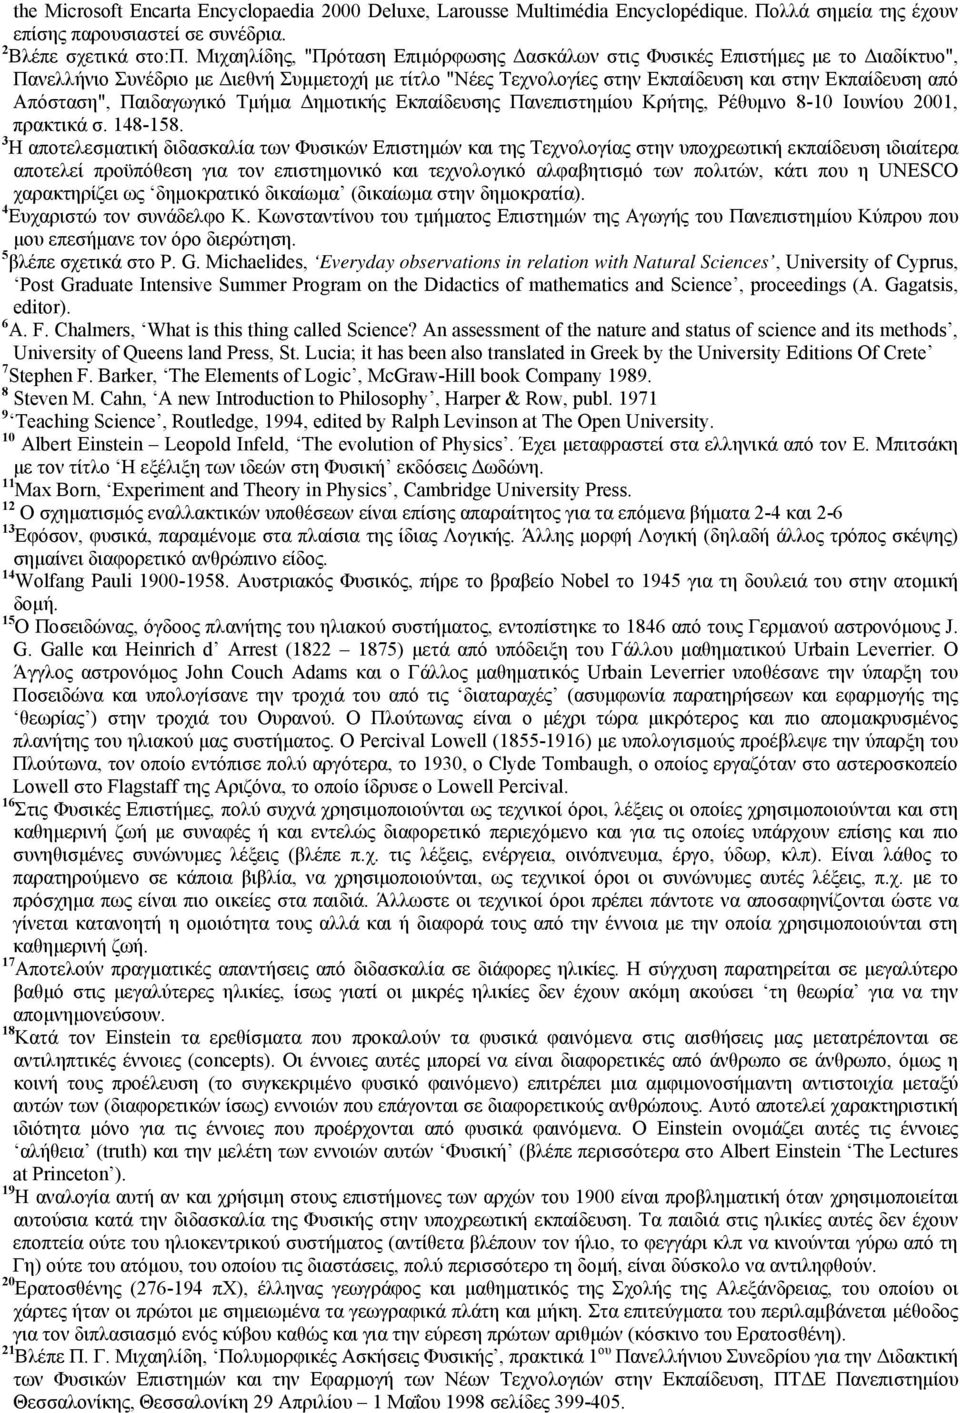 Απόσταση", Παιδαγωγικό Τμήμα Δημοτικής Εκπαίδευσης Πανεπιστημίου Κρήτης, Ρέθυμνο 8-10 Ιουνίου 2001, πρακτικά σ. 148-158.